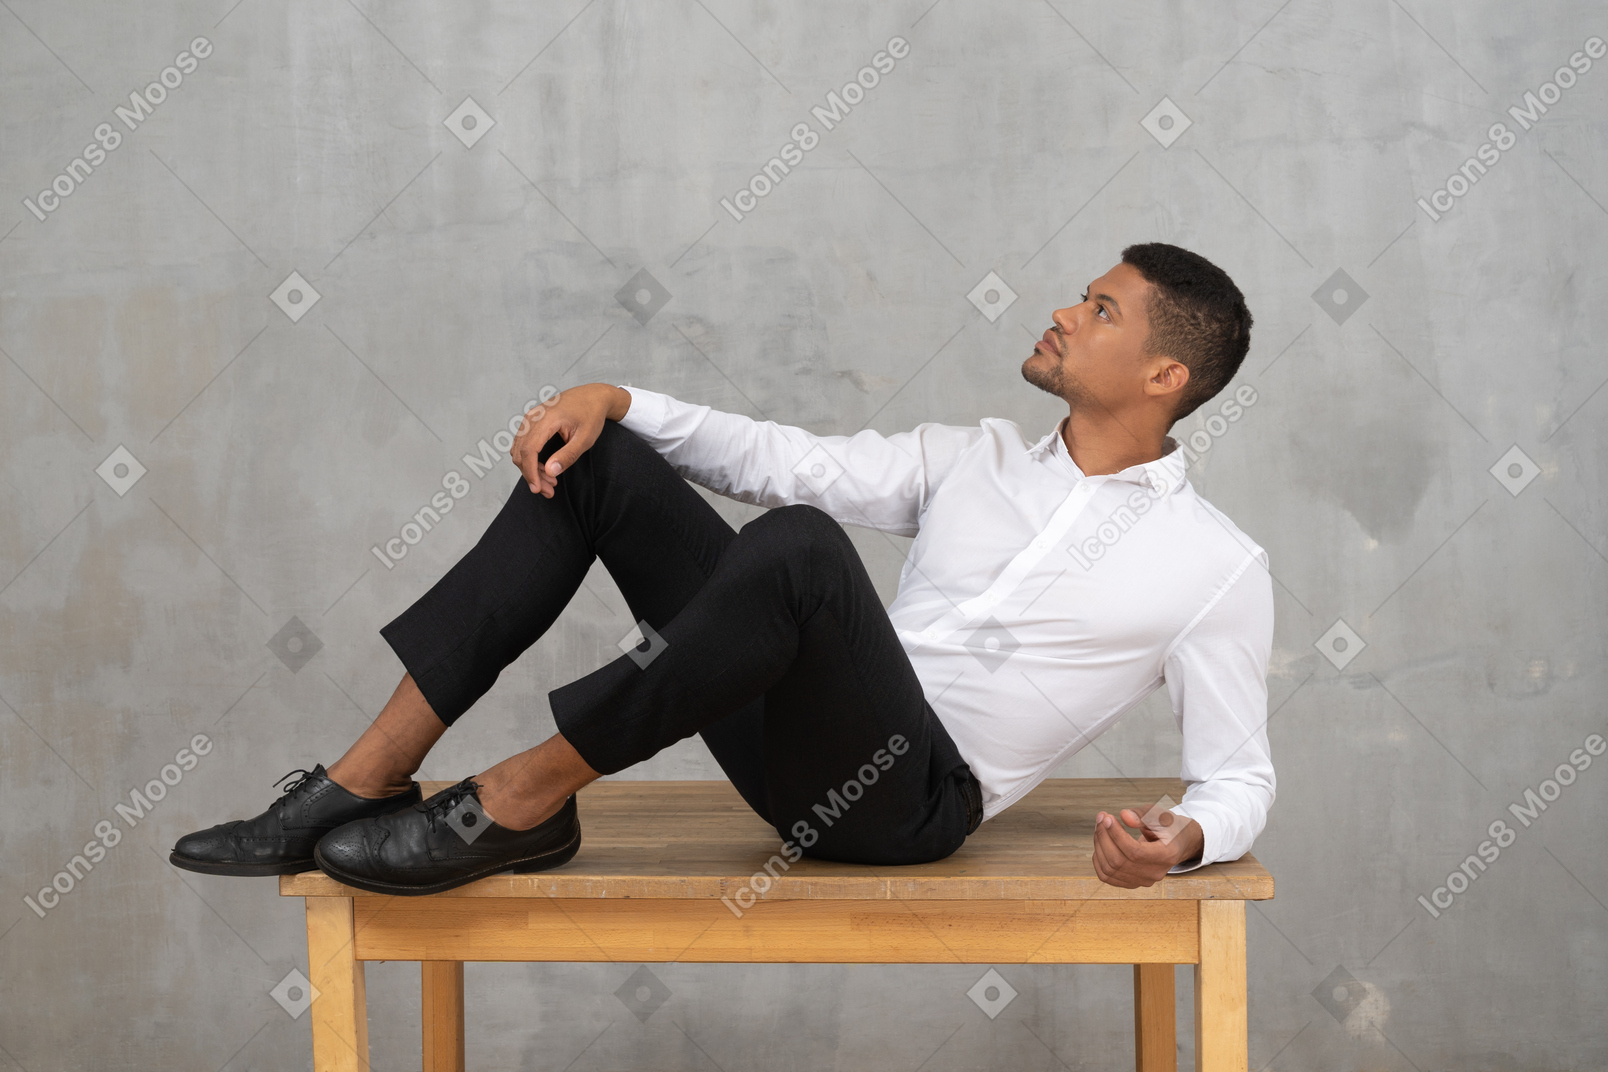 テーブルの上に横たわるフォーマルな服装の男